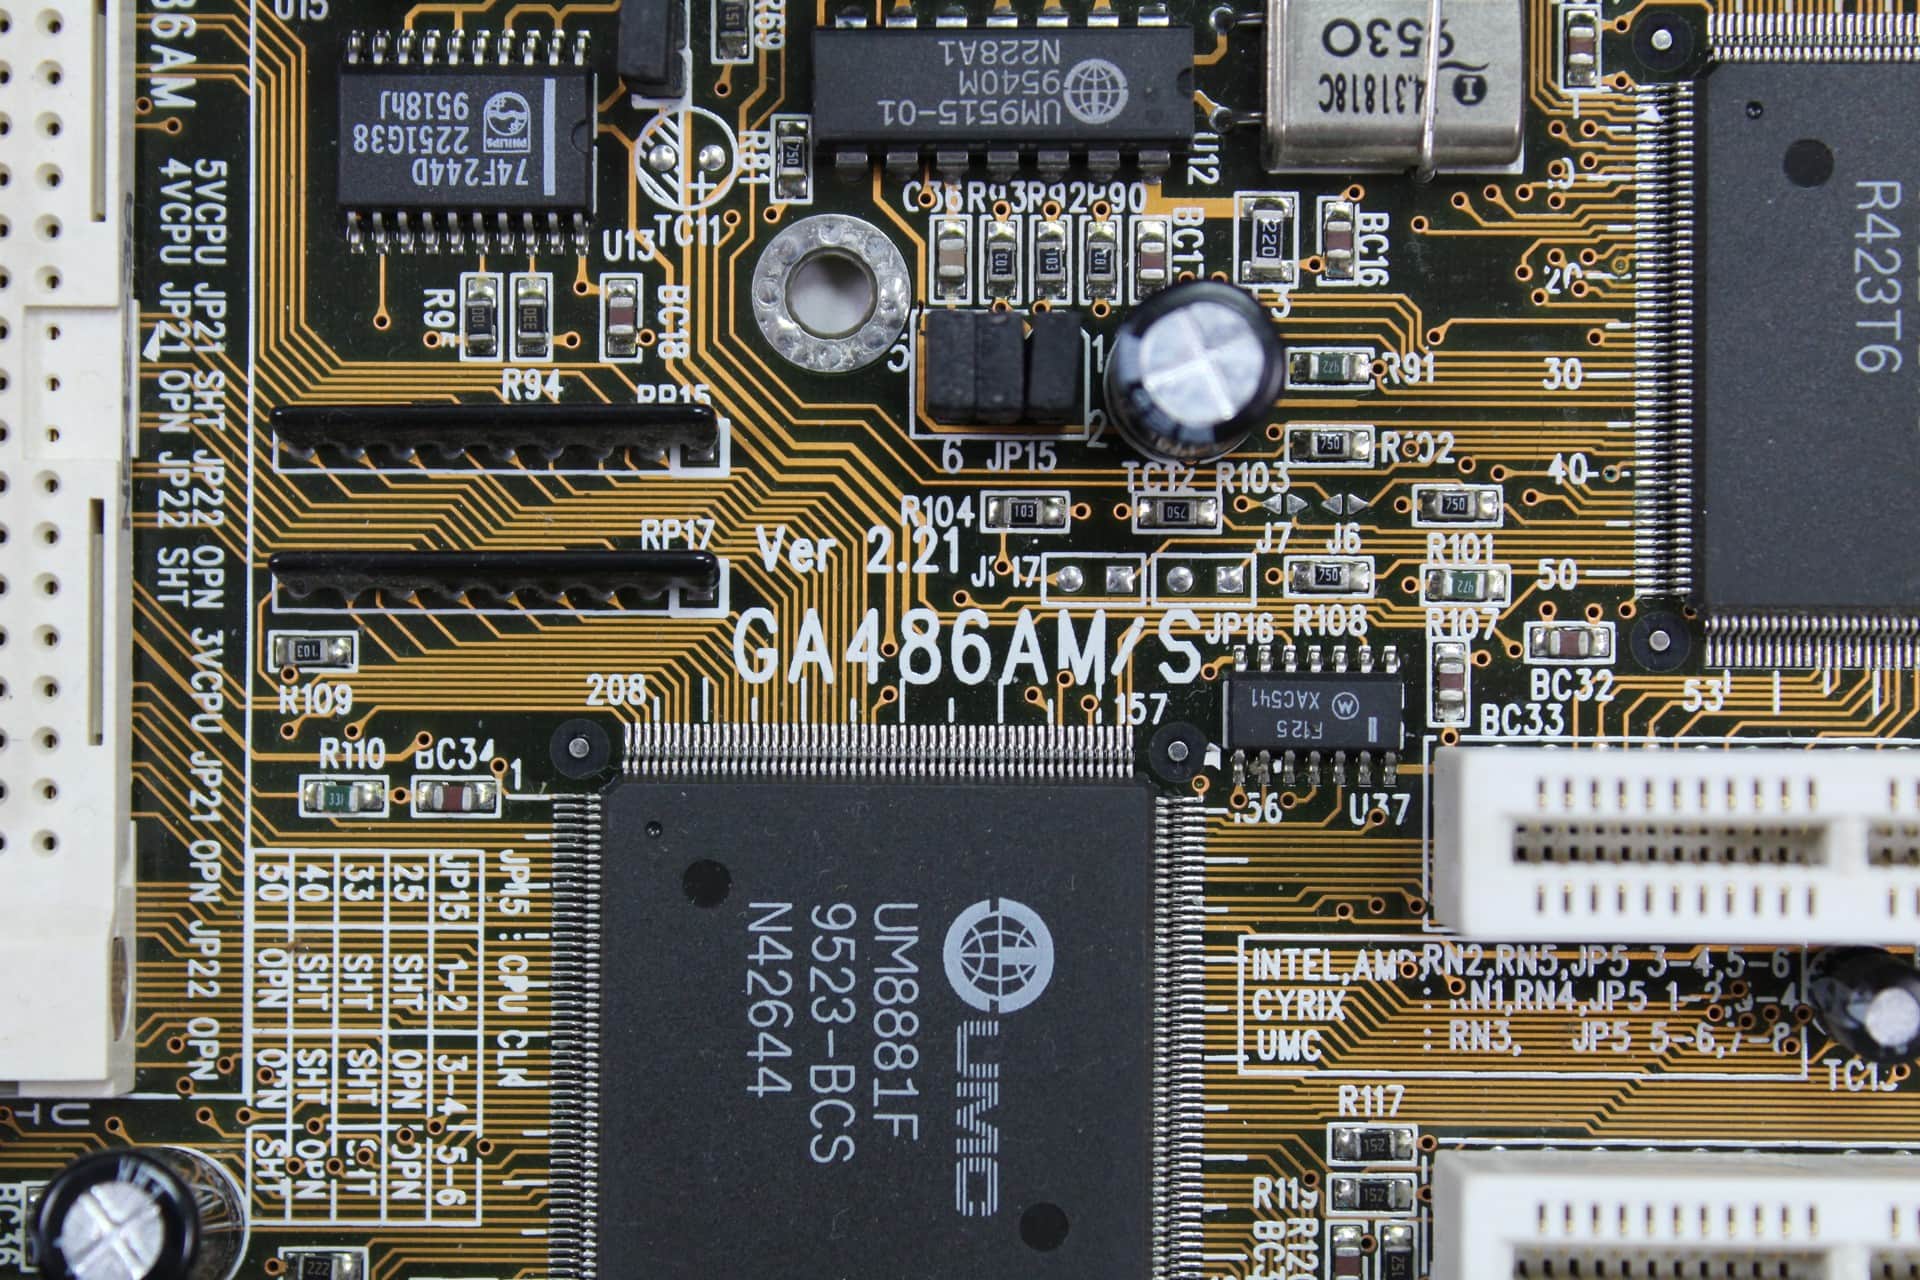 Gigabyte GA-486AM/AMS